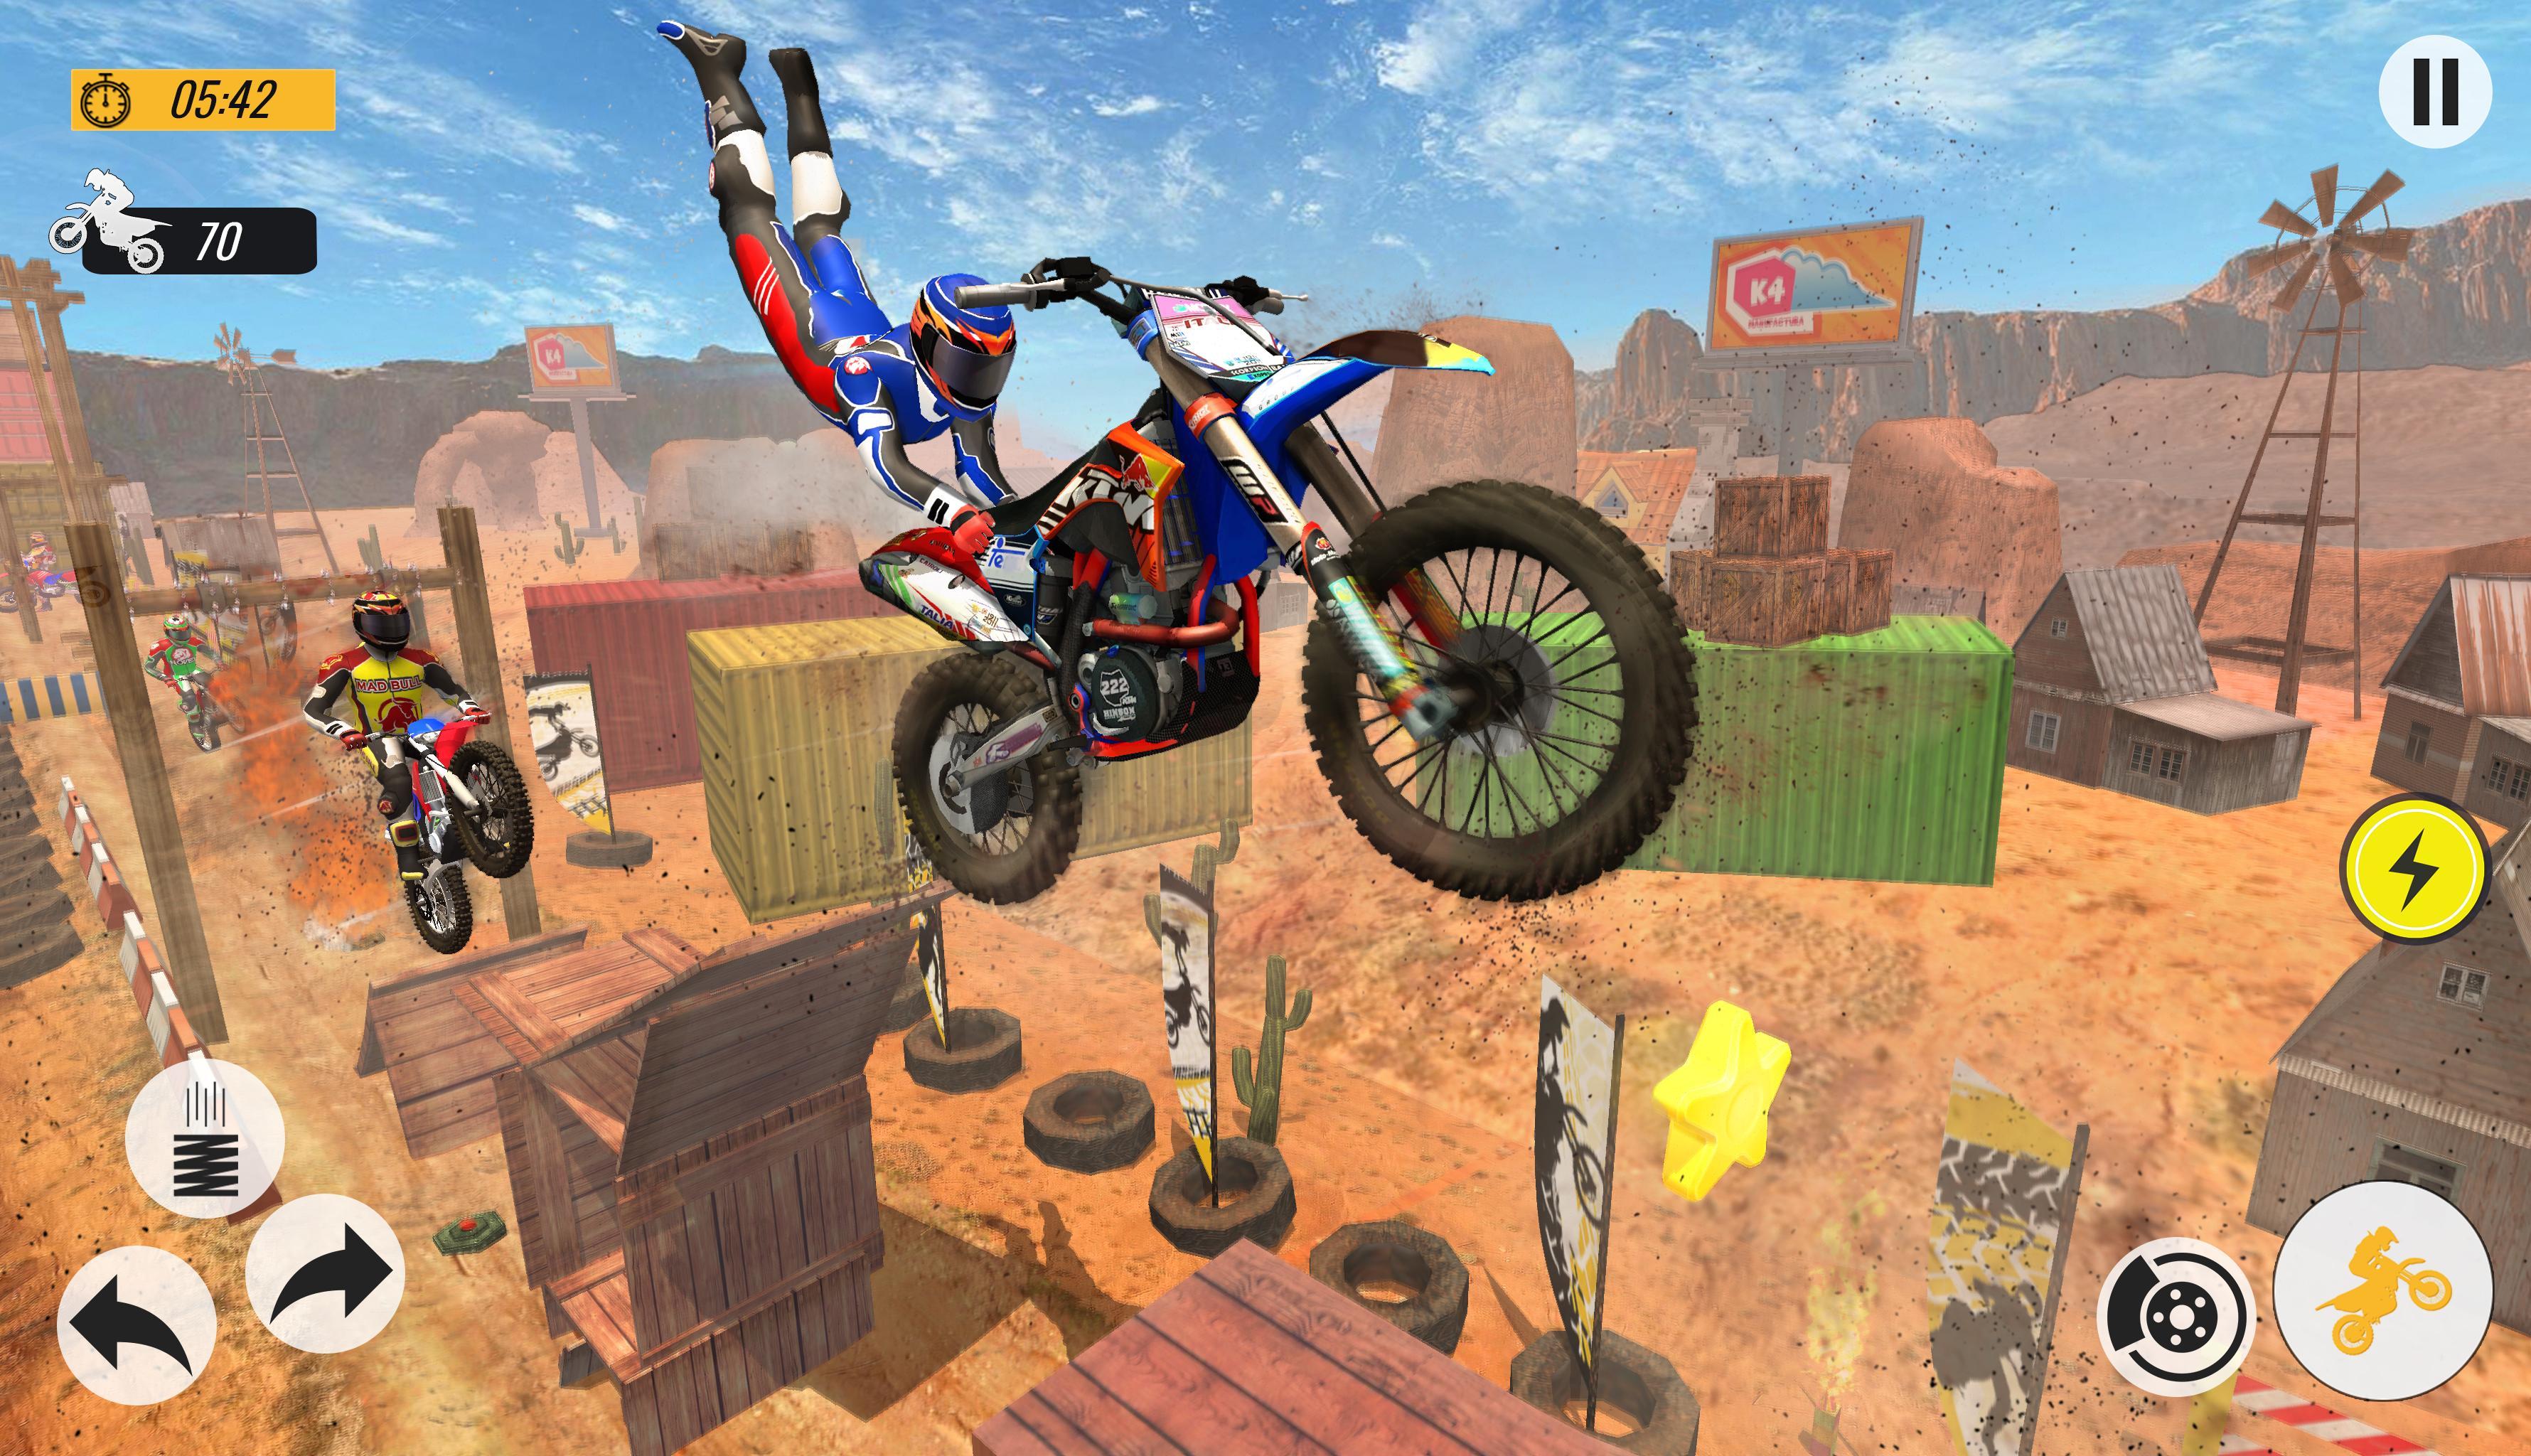 Bike Stunts 3D Racing Stunts Game Free Bike Games 11.9 Screenshot 10